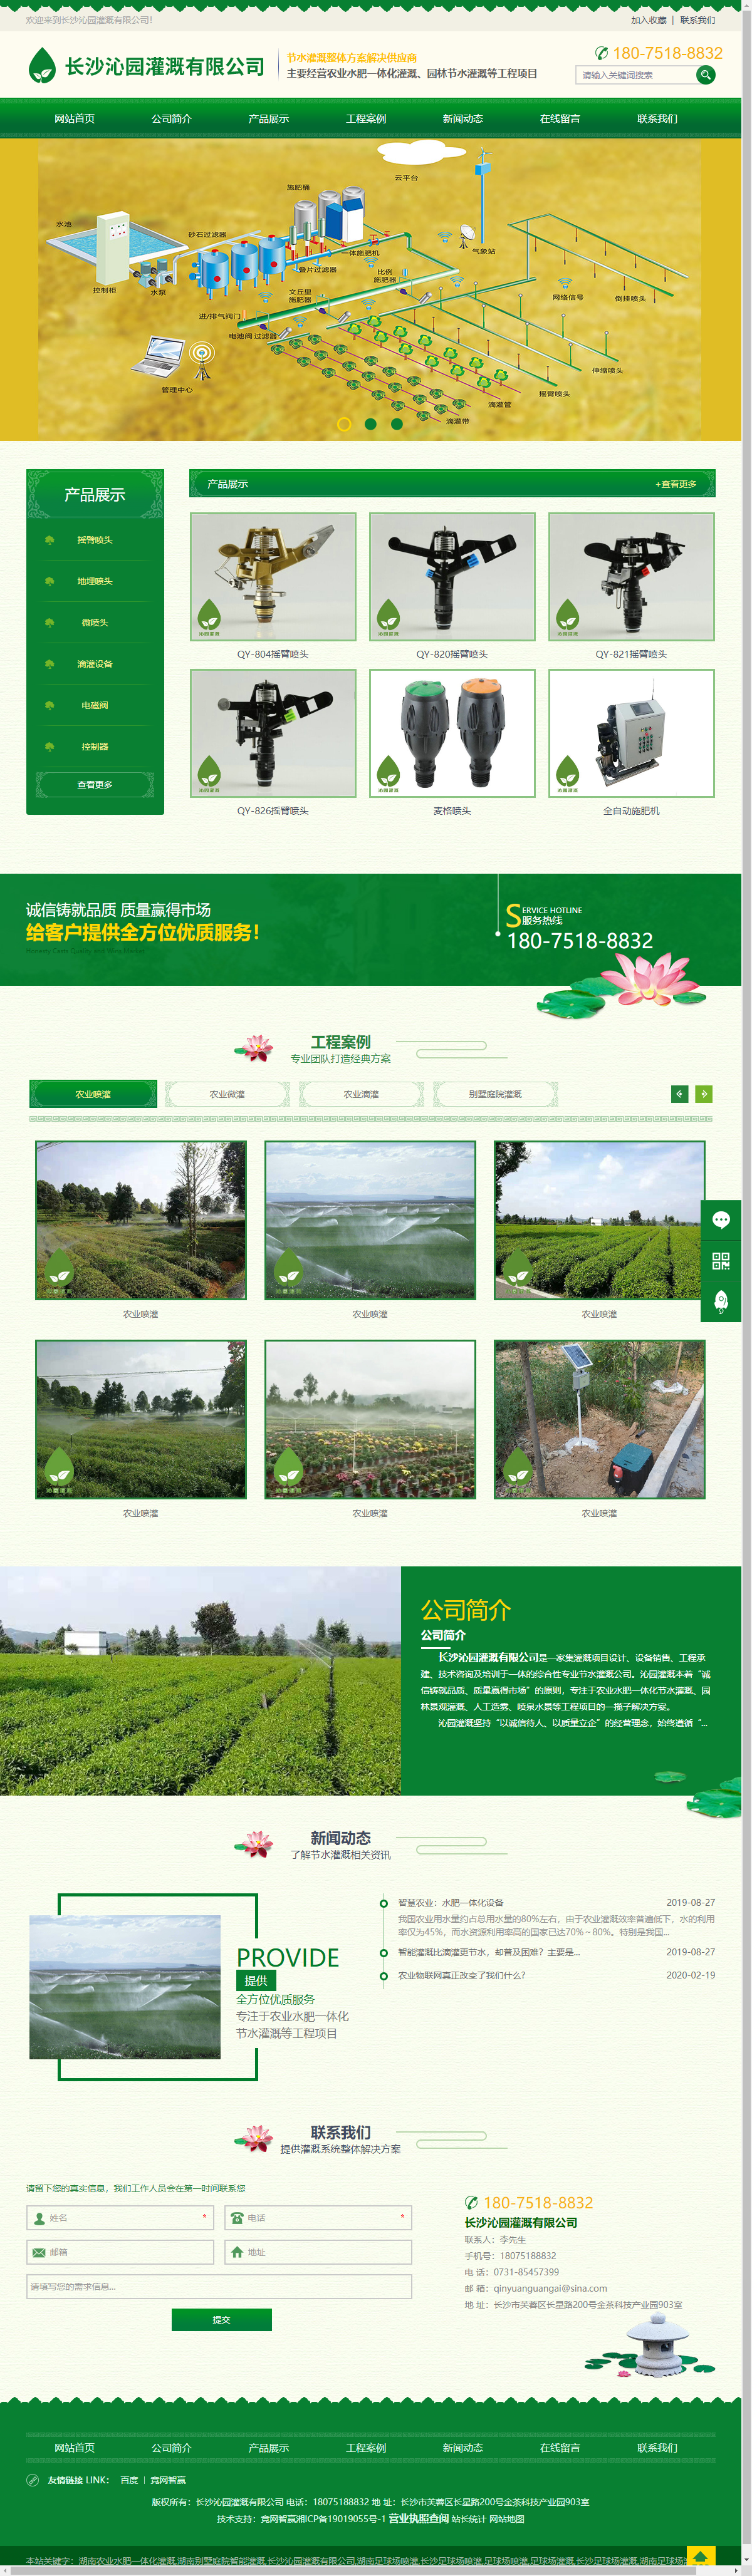 长沙沁园灌溉有限公司网站案例